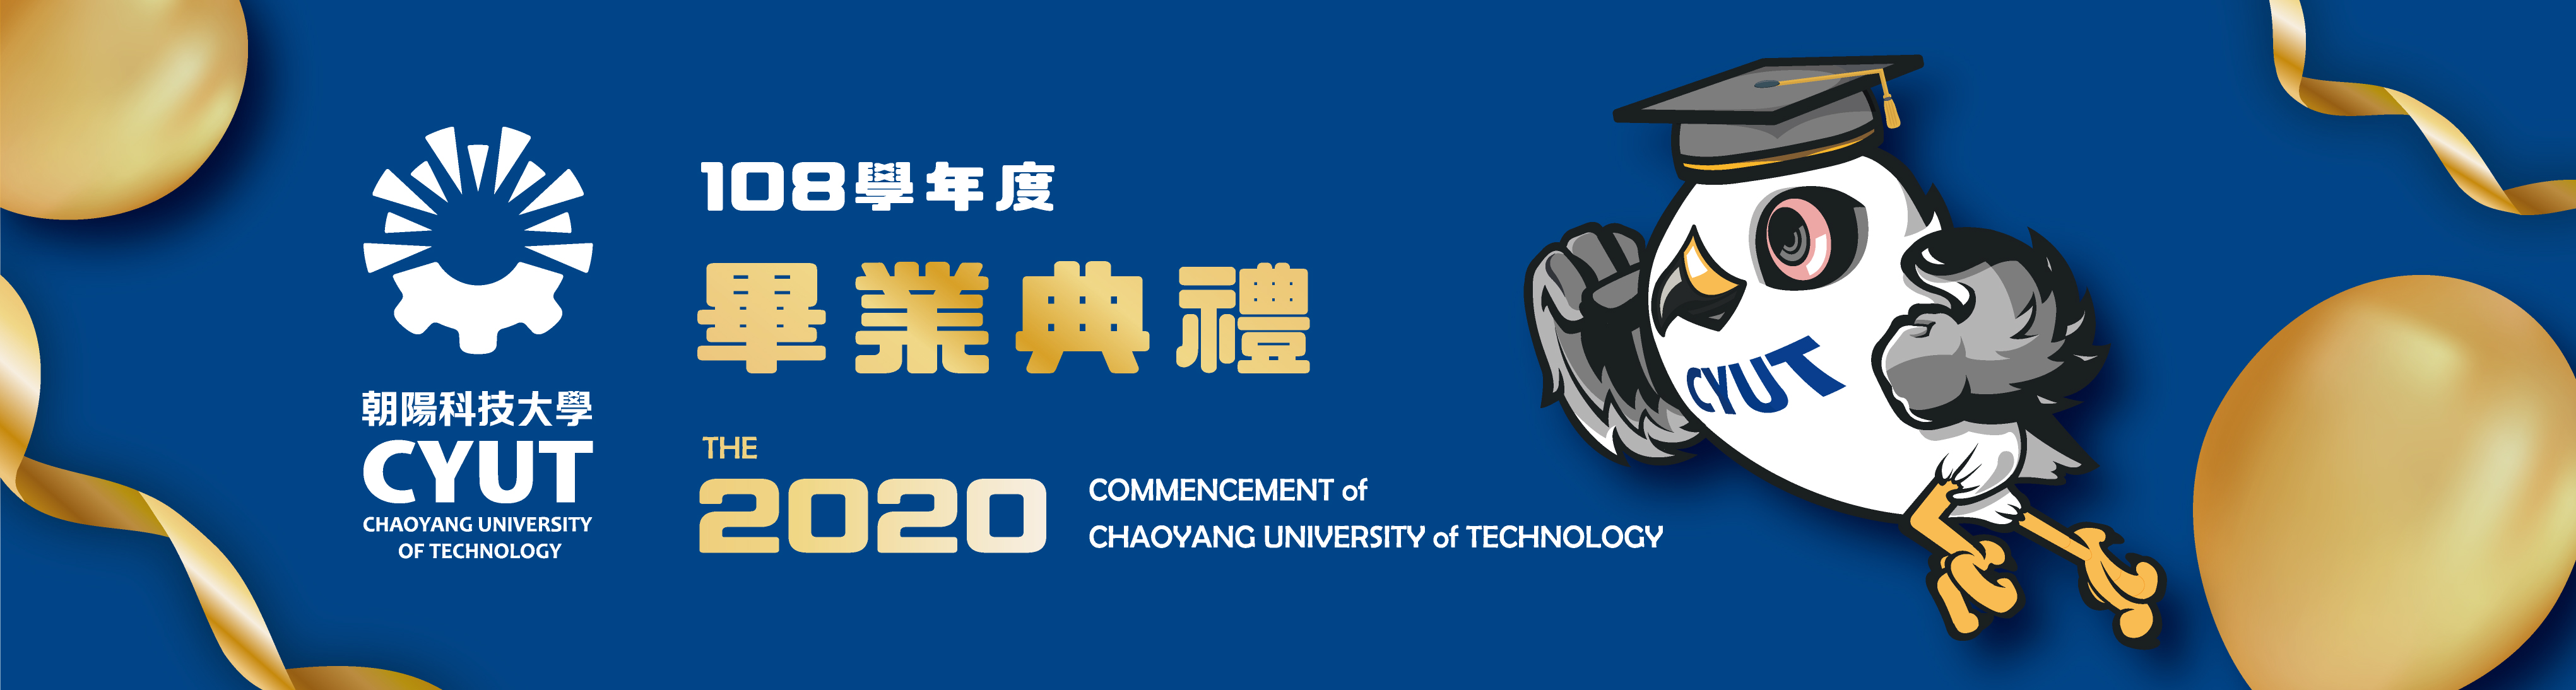 朝陽科技大學-108學年度畢業典禮